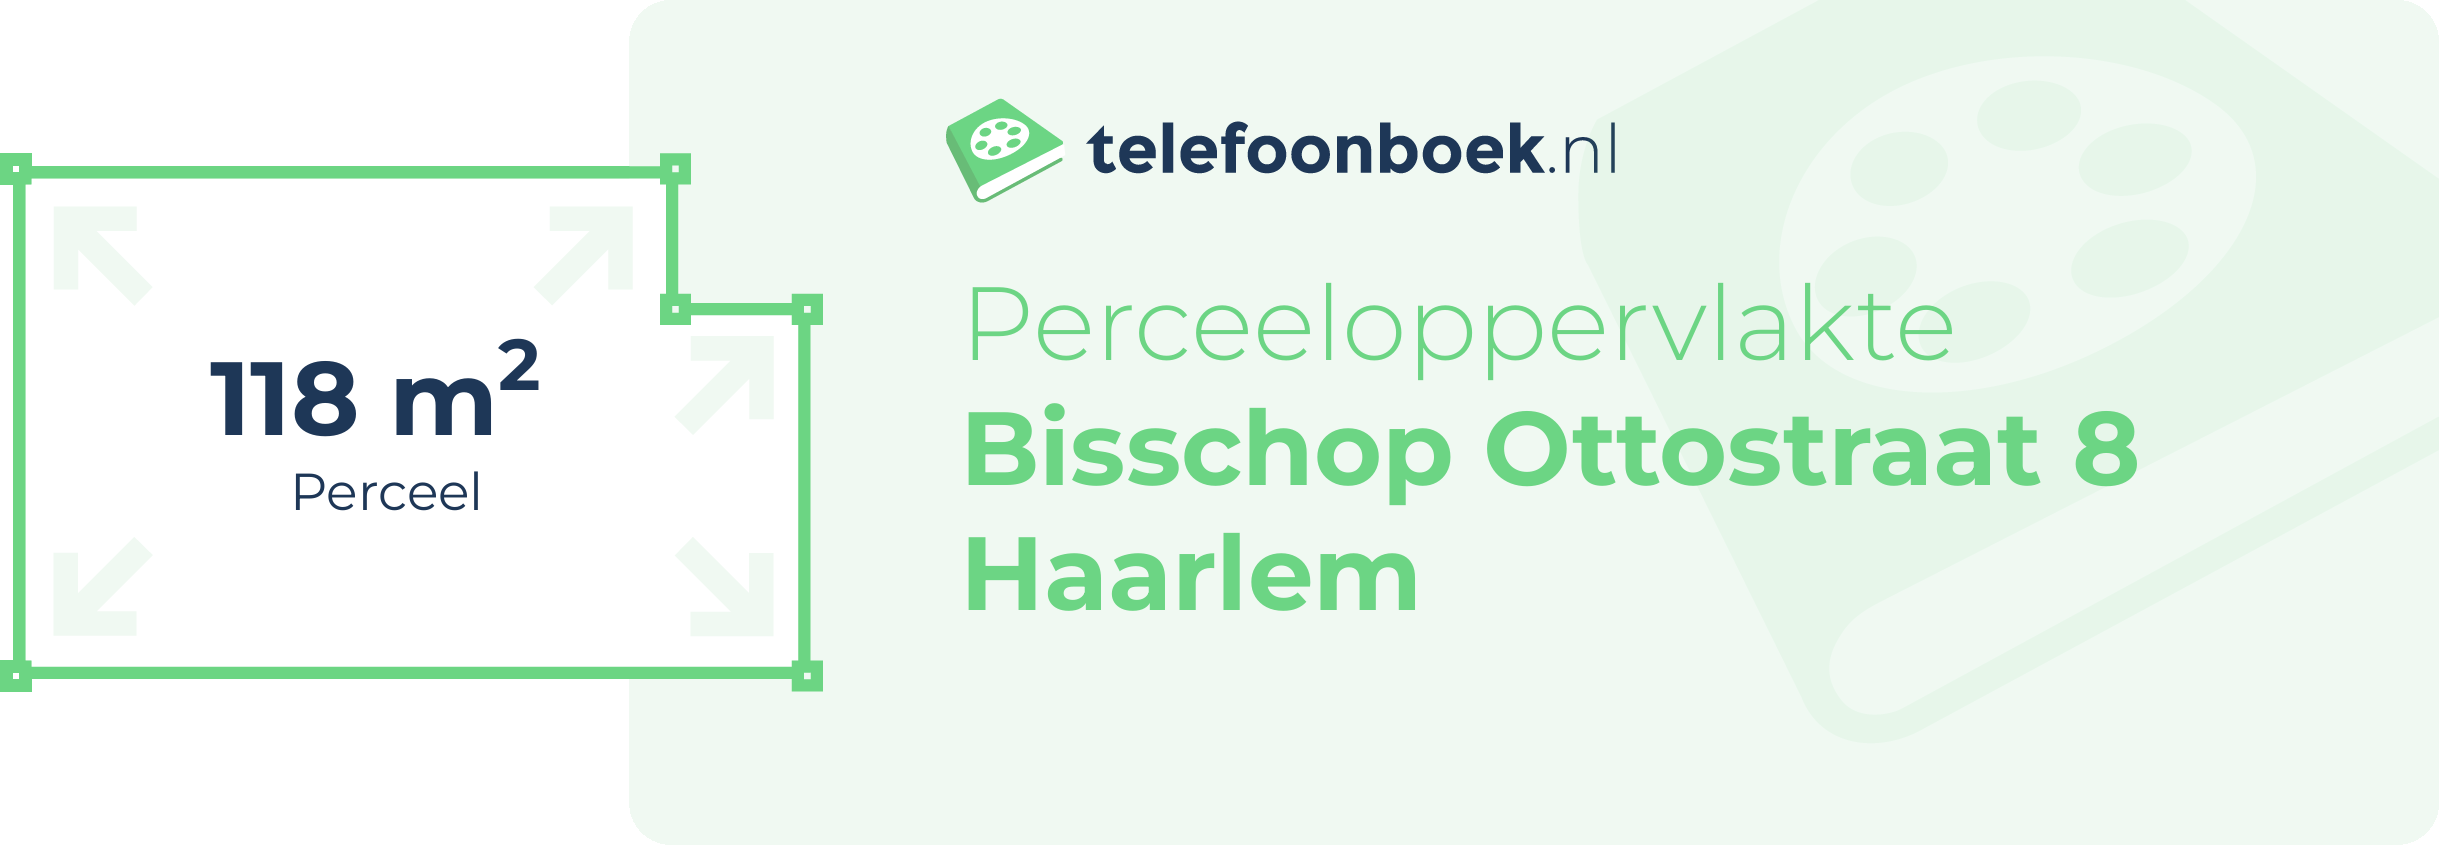 Perceeloppervlakte Bisschop Ottostraat 8 Haarlem